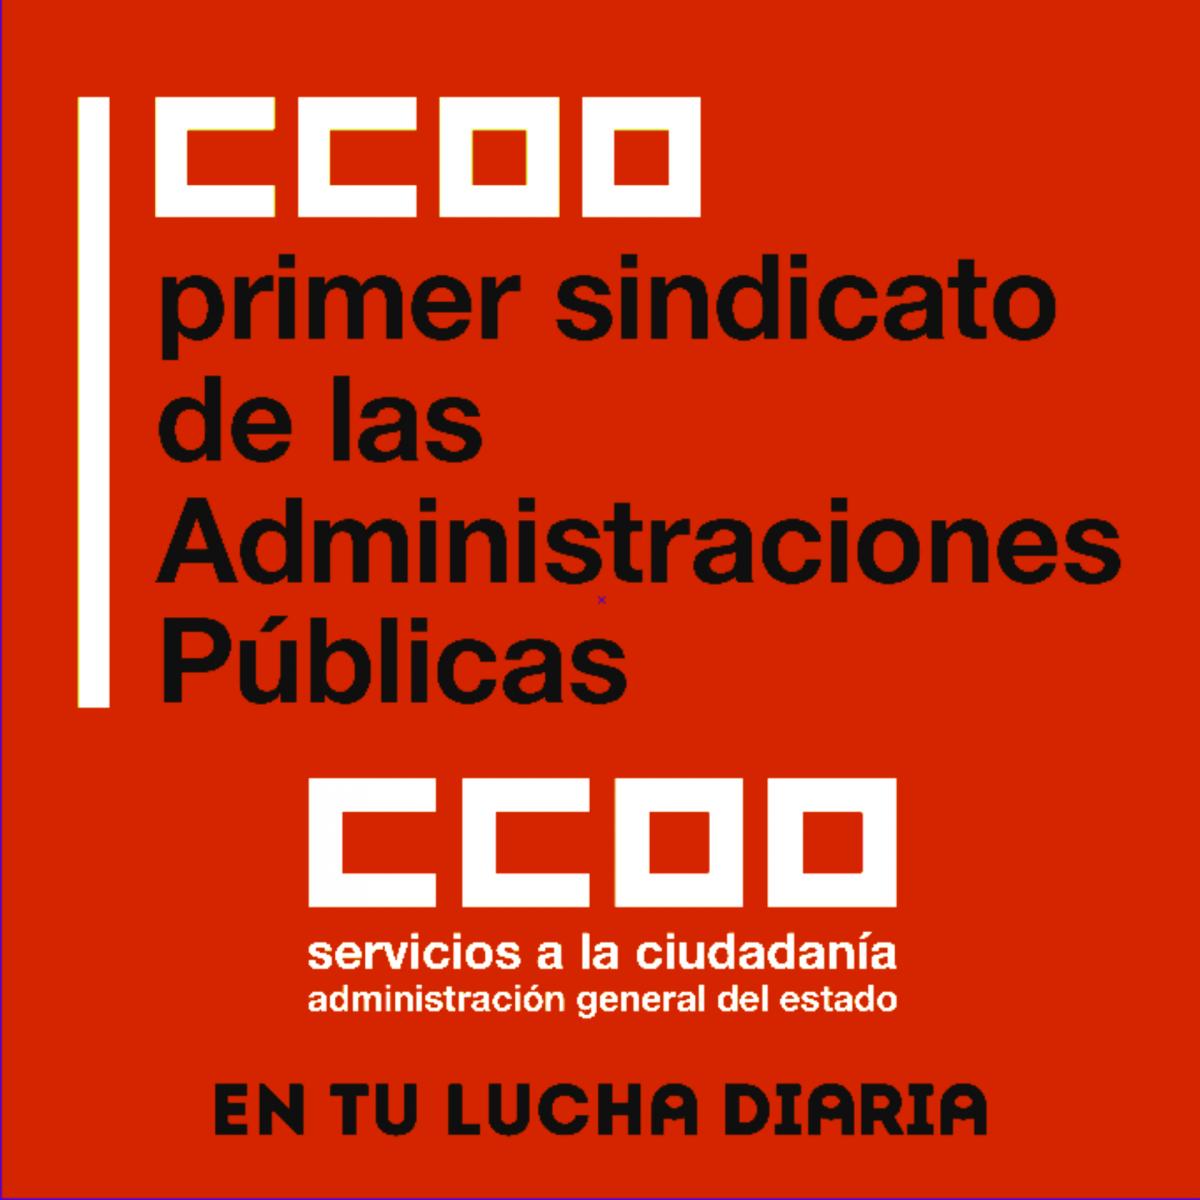 CCOO primer sindicato Administraciones pblicas